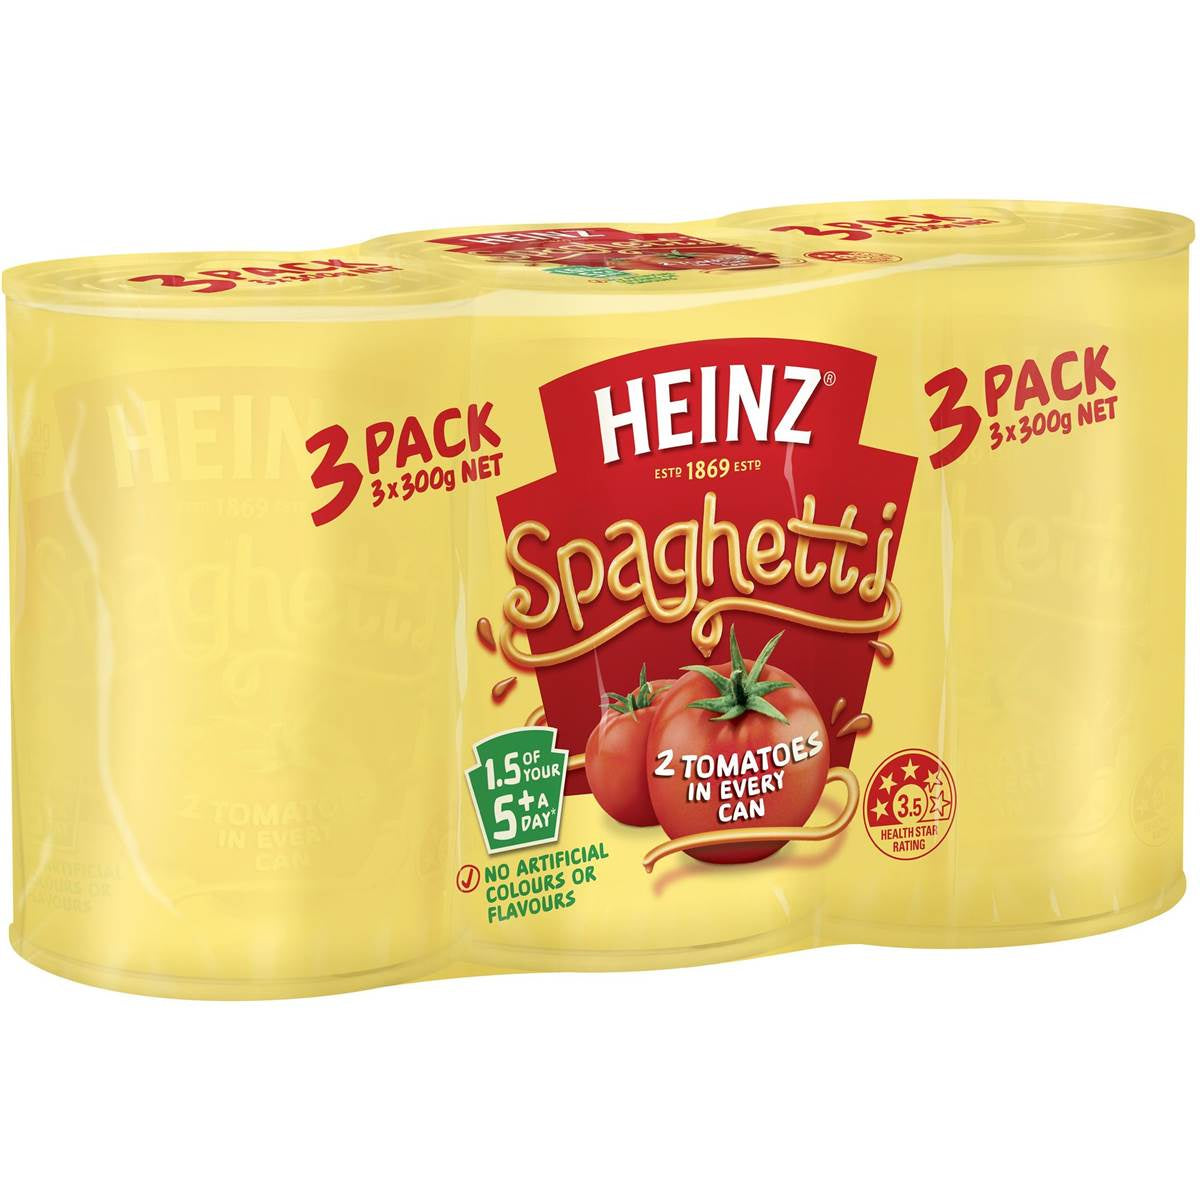 Heinz Spaghetti Tomato Sauce 300g x 3 **